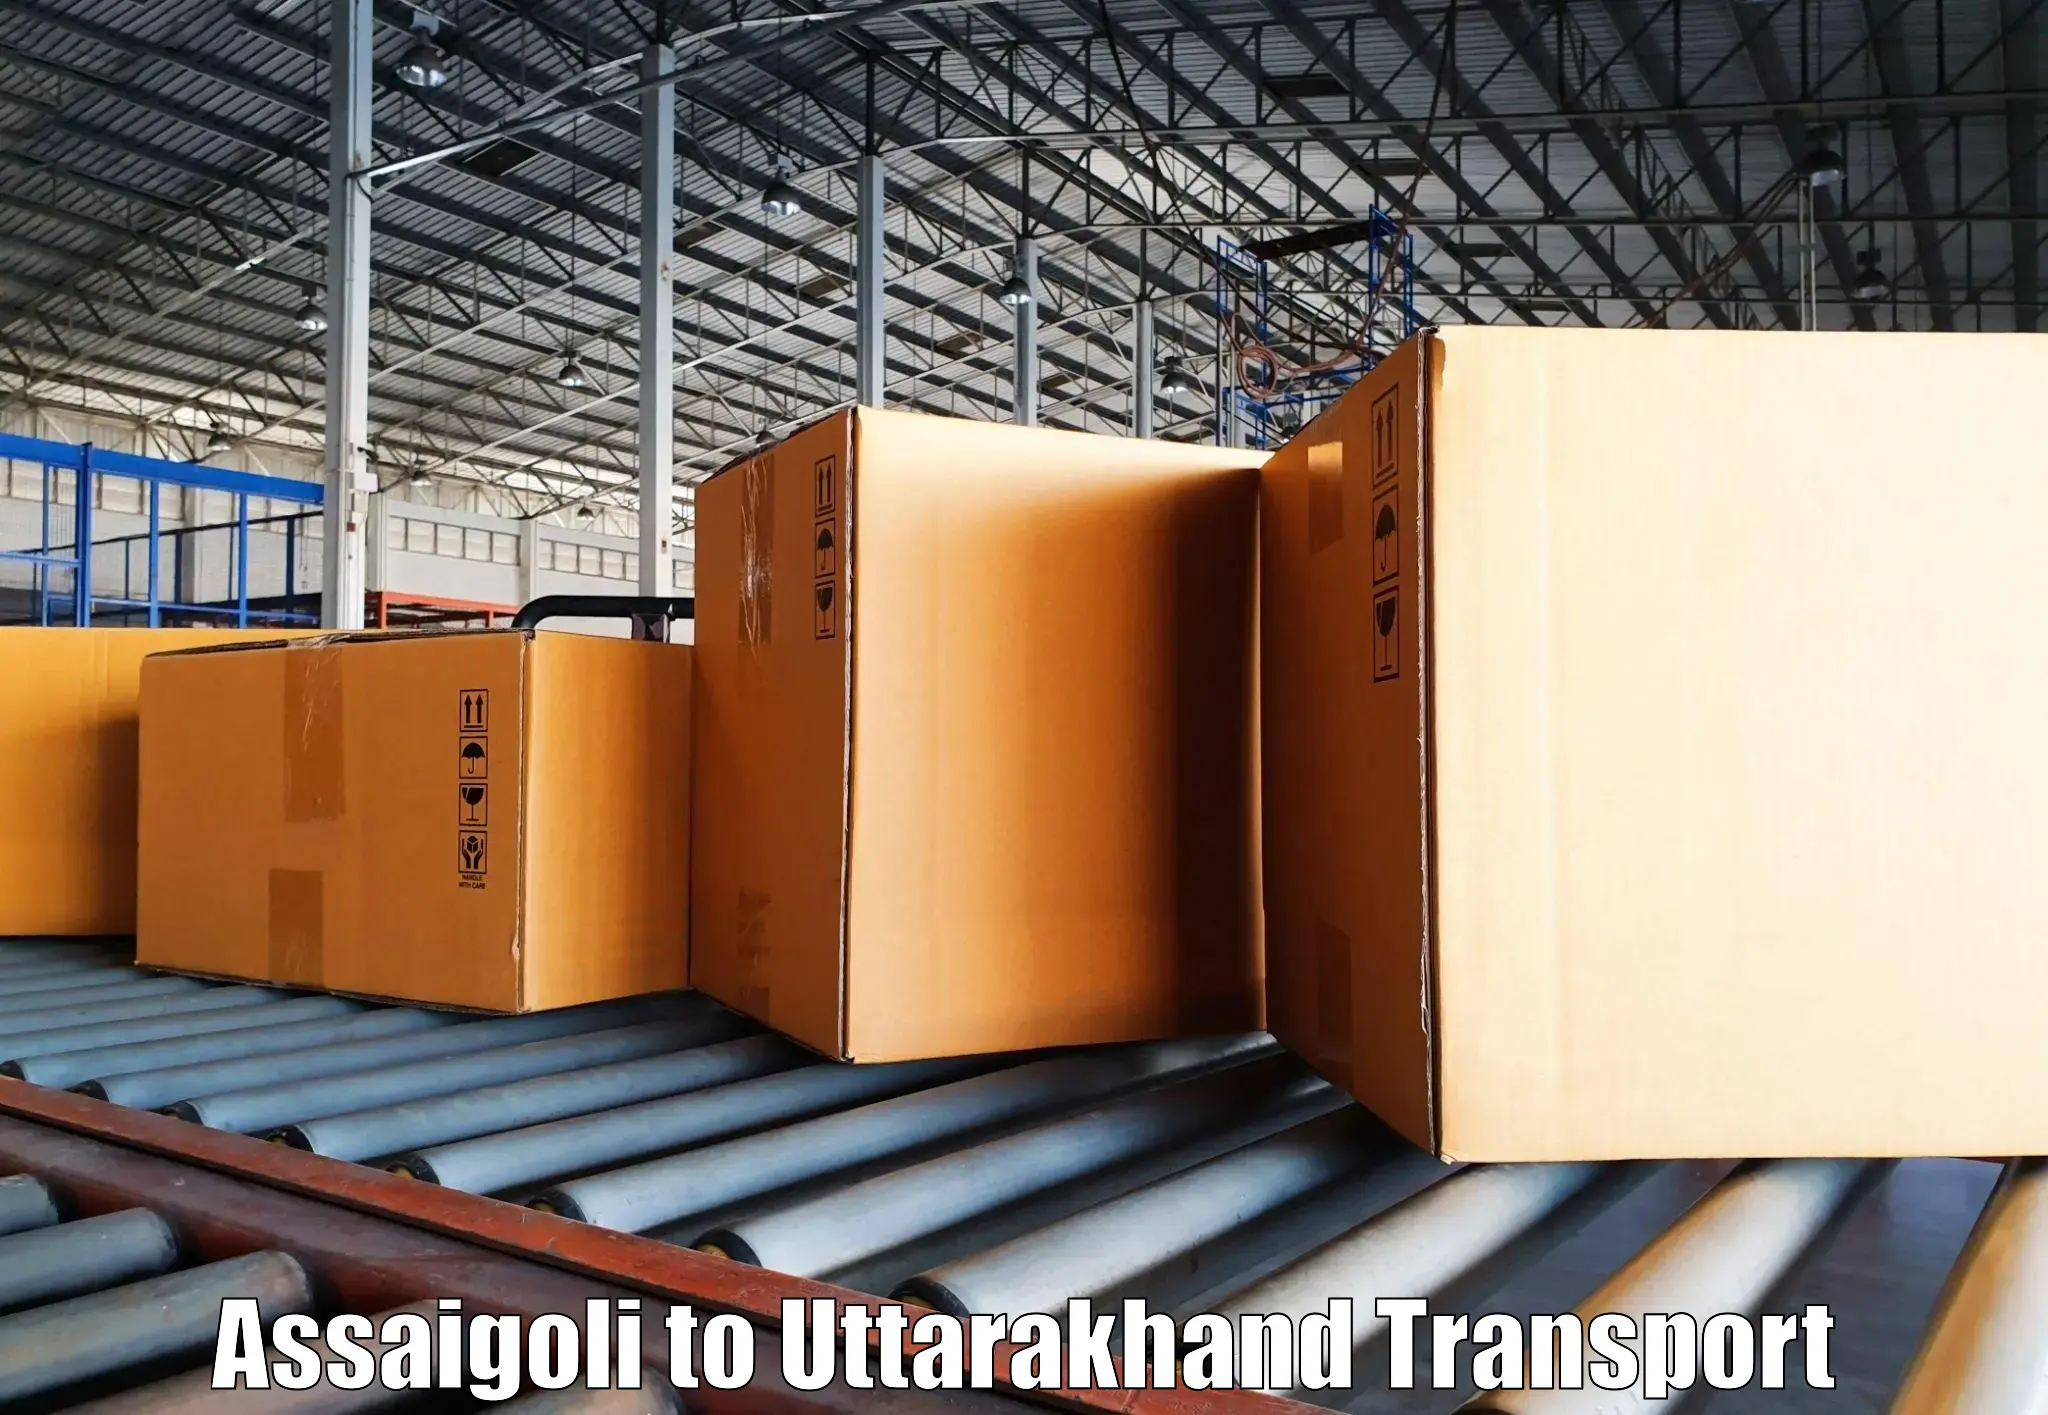 Bike transport service Assaigoli to Dehradun